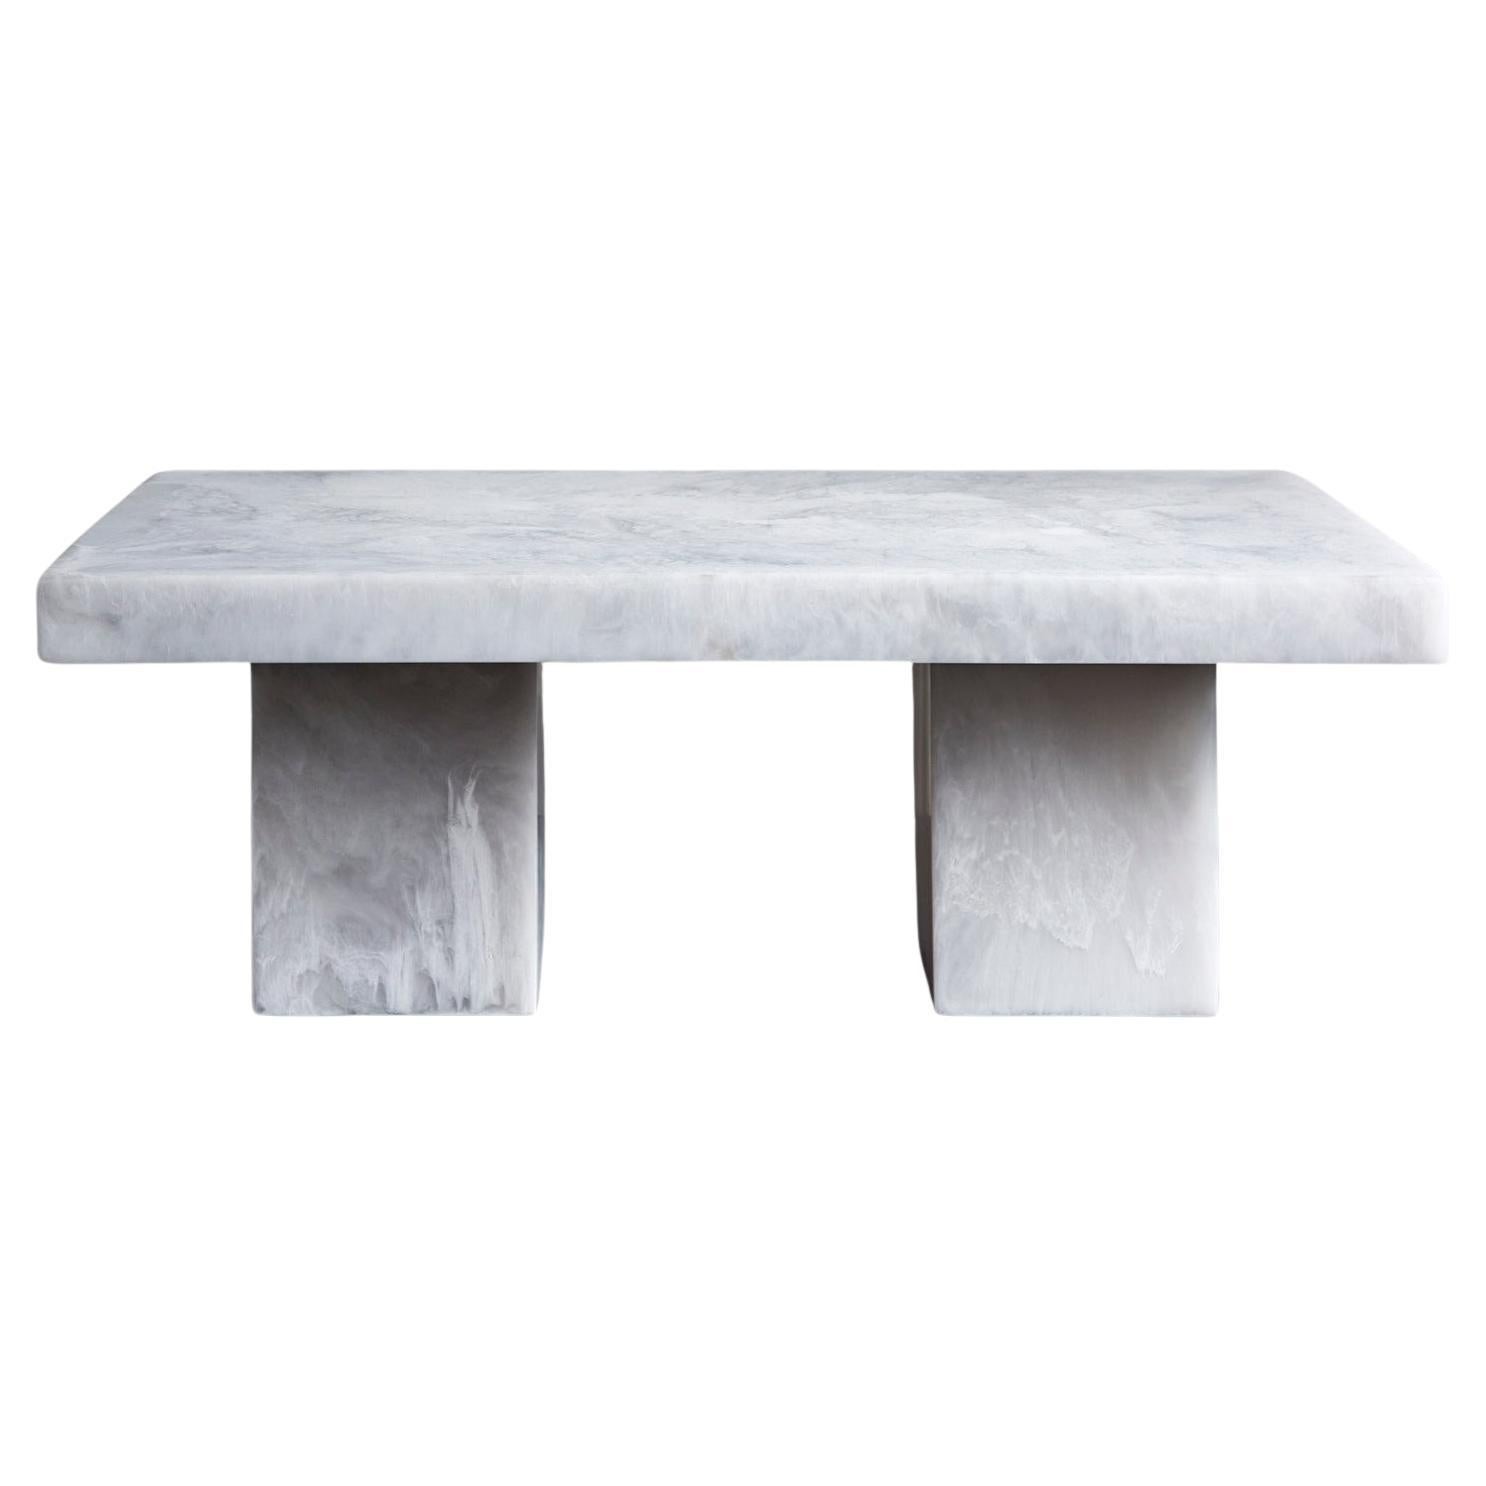 Studio Sturdy Lions Coffee Table - Résine de marbre blanc en vente